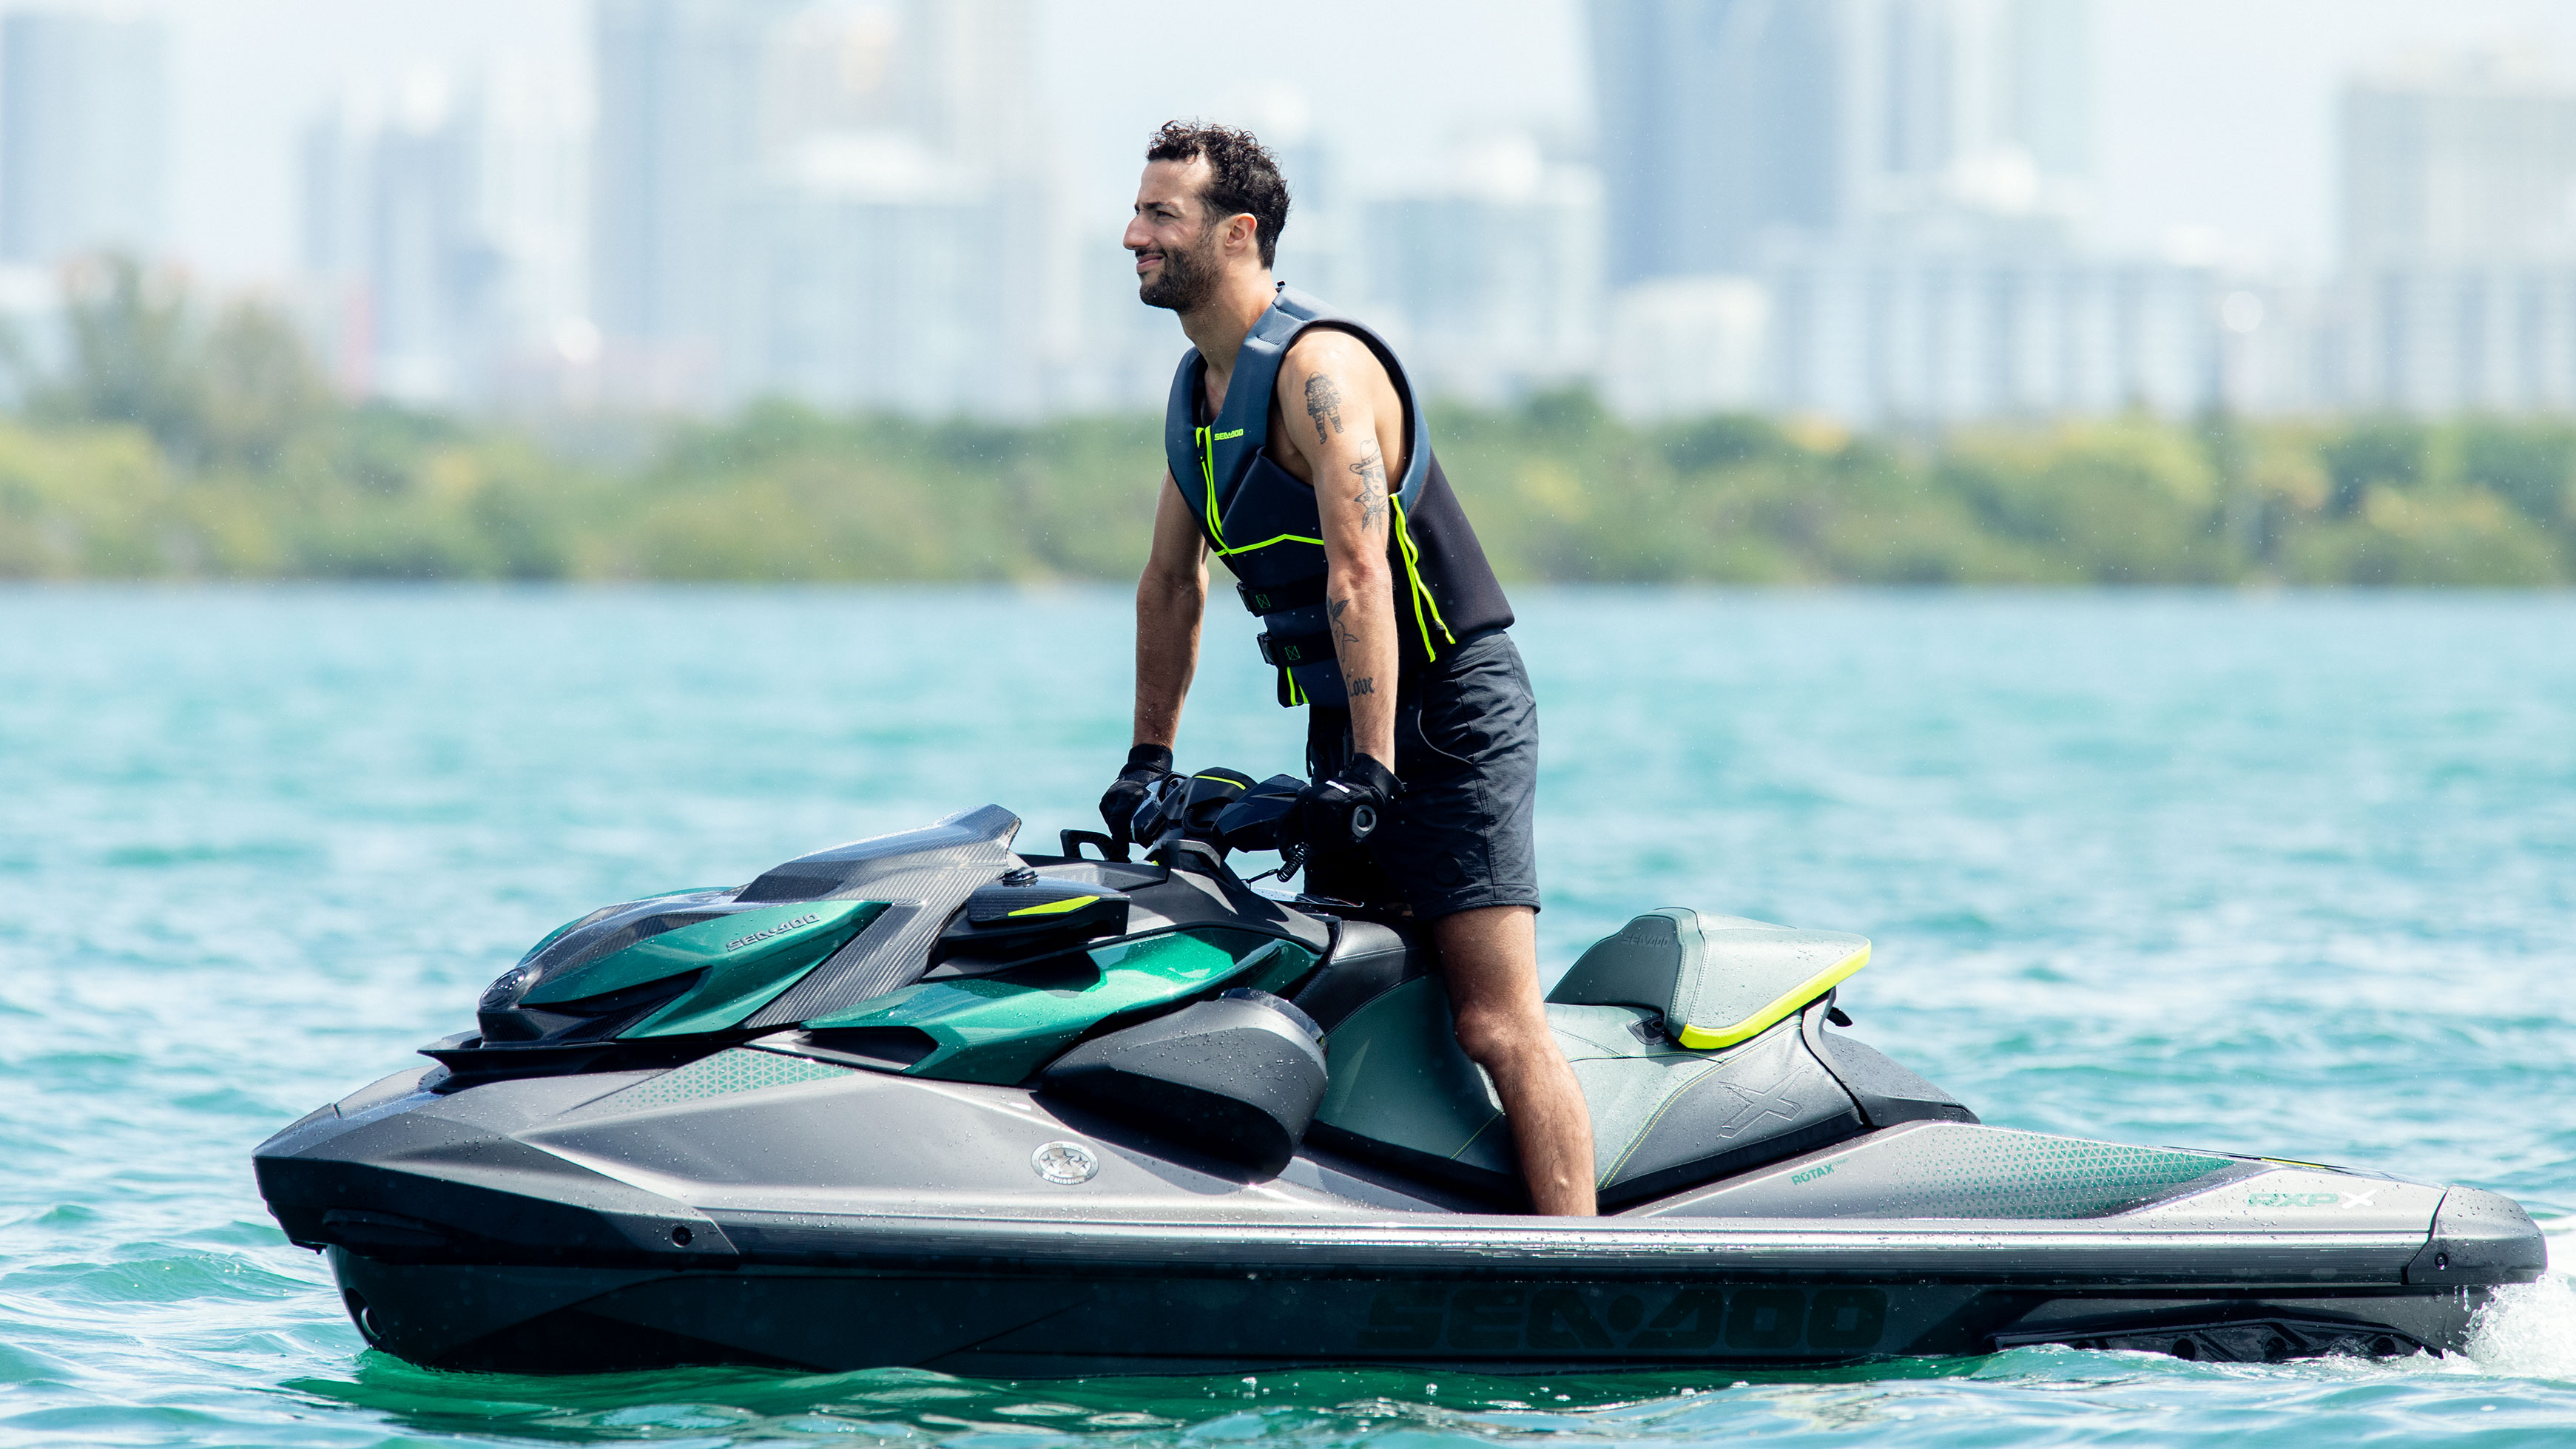 Daniel Ricciardo auf dem neuen Hochleistungs-Jetboot von Sea-Doo auf dem Wasser